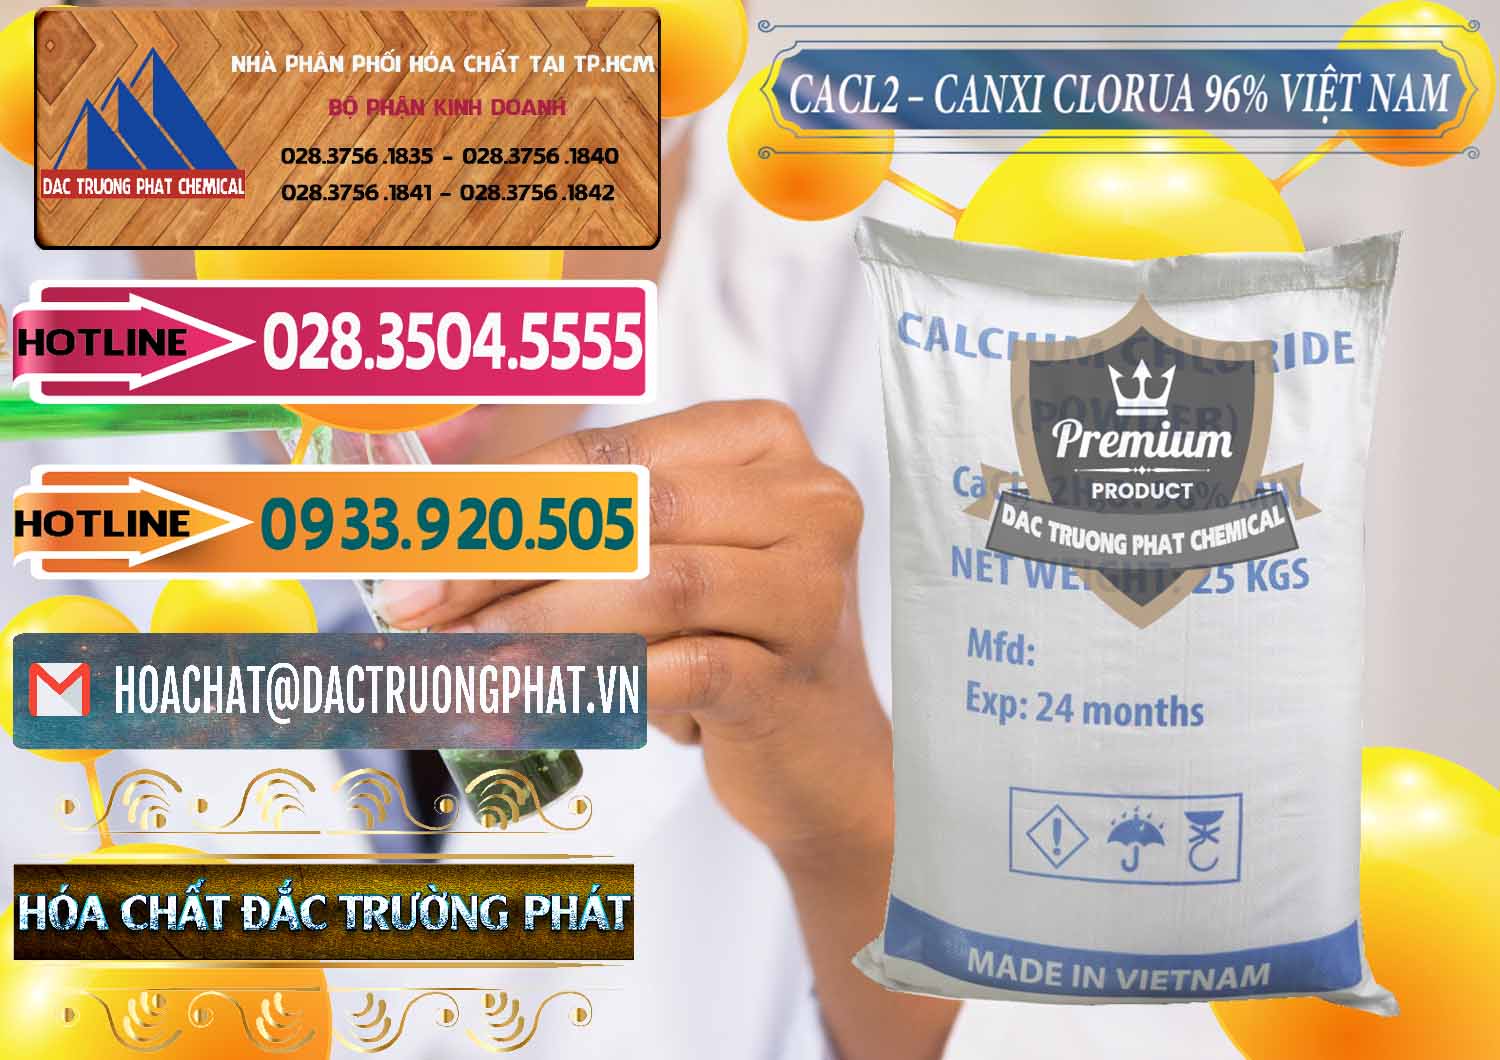 Cty cung cấp _ kinh doanh CaCl2 – Canxi Clorua 96% Việt Nam - 0236 - Nhà cung cấp - kinh doanh hóa chất tại TP.HCM - dactruongphat.vn